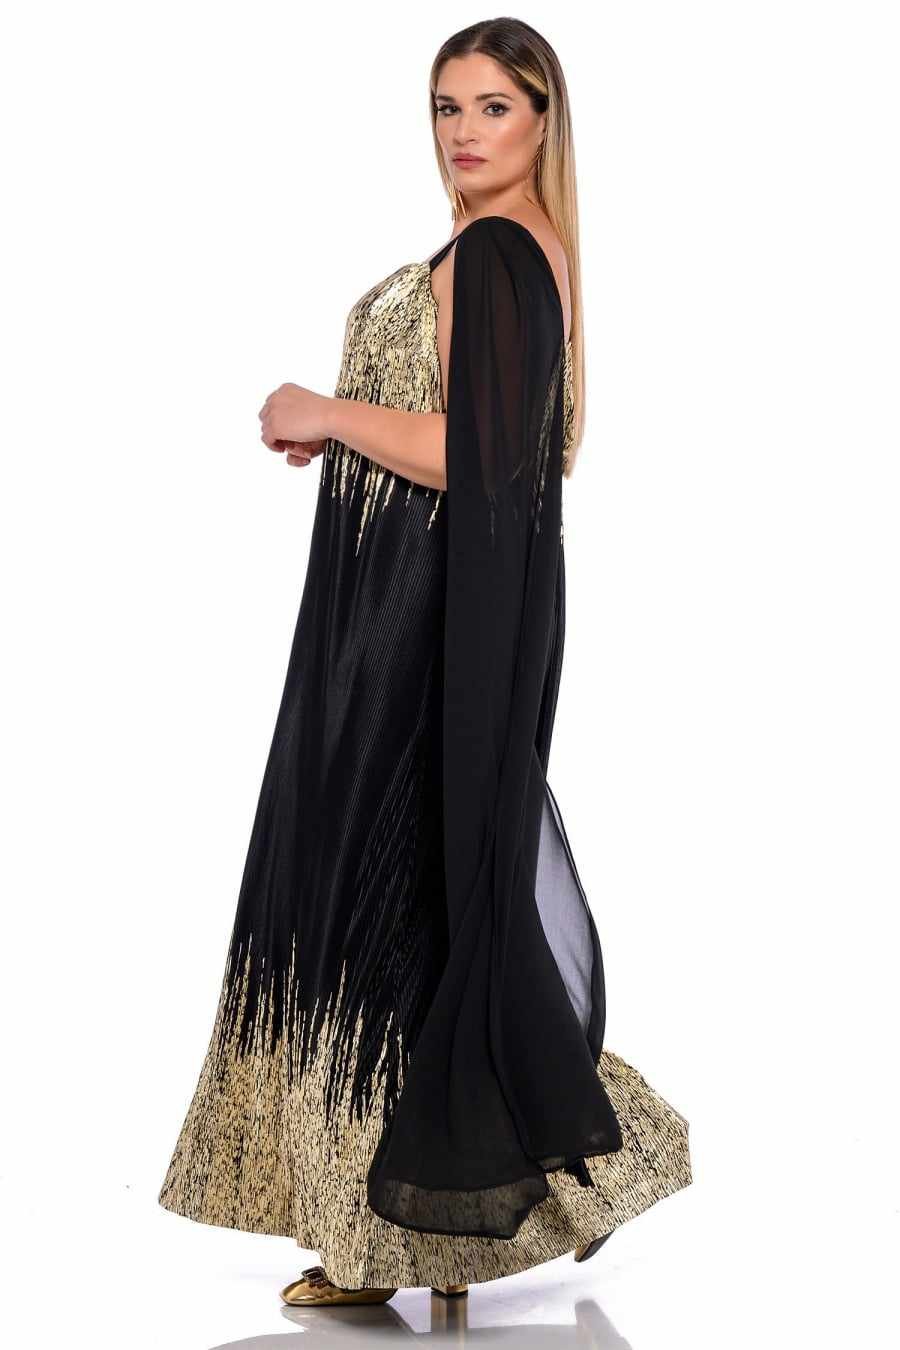 Φόρεμα Lady Gold Κωδικός: 4-0395 Μαύρο Χρυσό